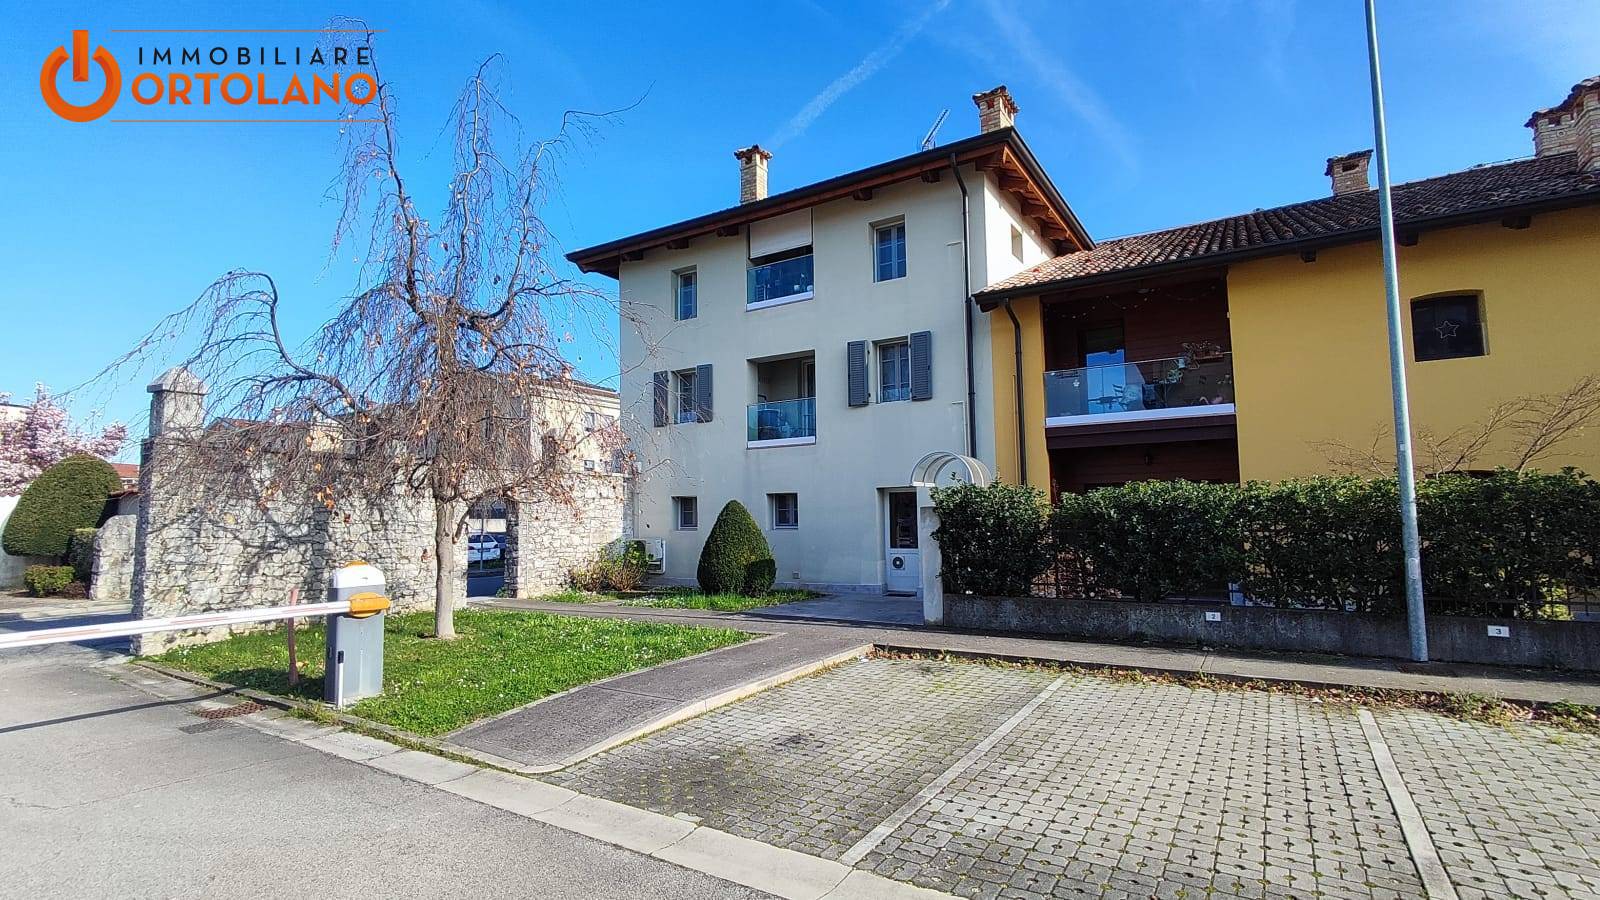 Appartamento in vendita Gorizia